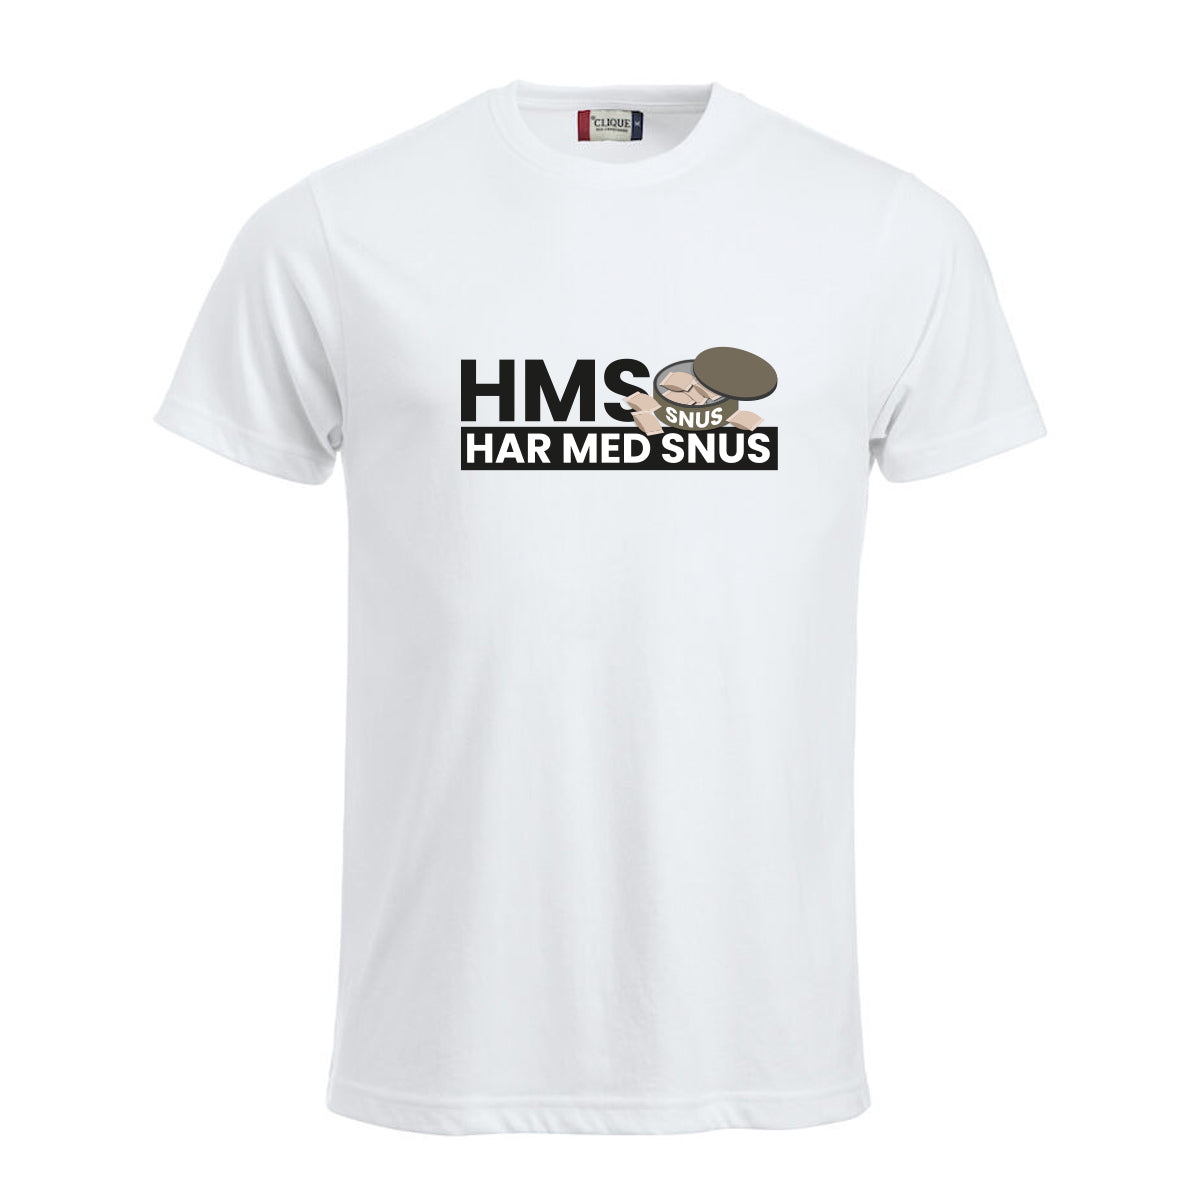 HMS Har med snus - t-skjorte